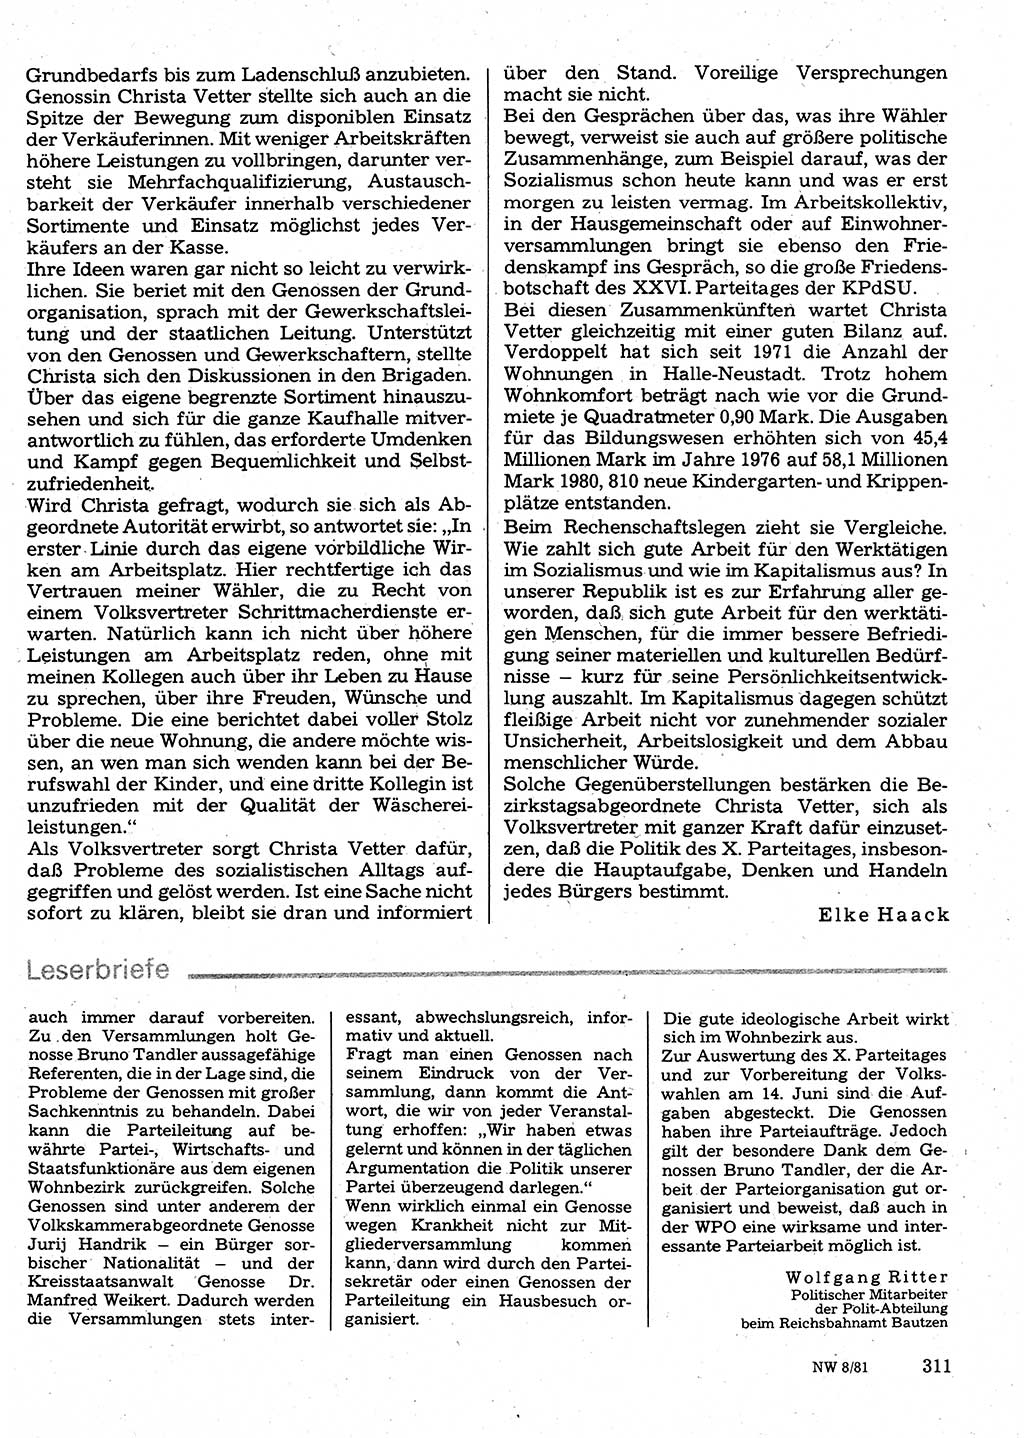 Neuer Weg (NW), Organ des Zentralkomitees (ZK) der SED (Sozialistische Einheitspartei Deutschlands) für Fragen des Parteilebens, 36. Jahrgang [Deutsche Demokratische Republik (DDR)] 1981, Seite 311 (NW ZK SED DDR 1981, S. 311)